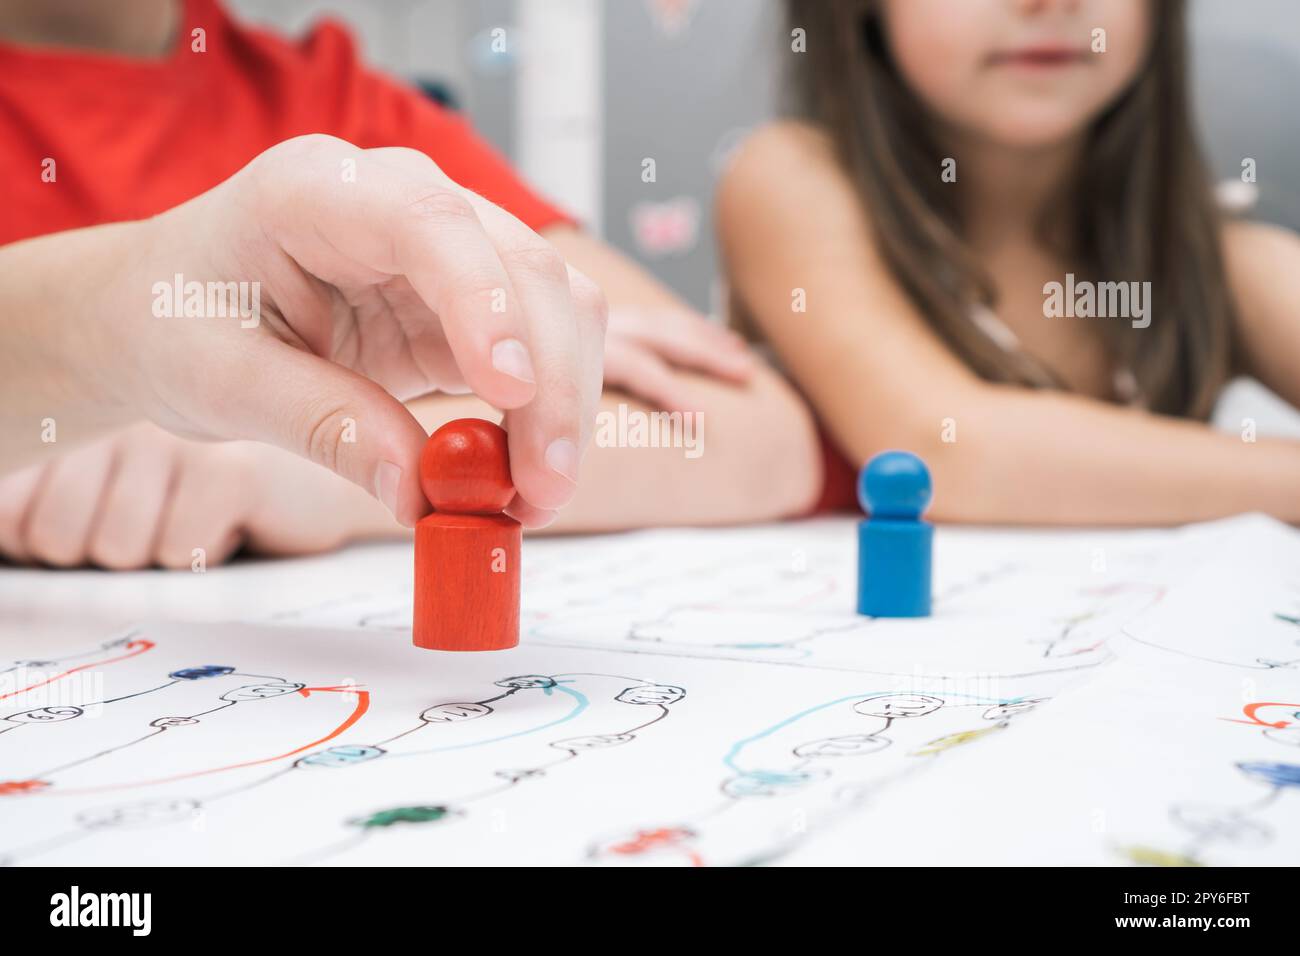 Les petits amis jouent à un jeu de société sur une carte papier à table. Main du joueur tenir la figure rouge gros plan, mise au point sélective. Banque D'Images